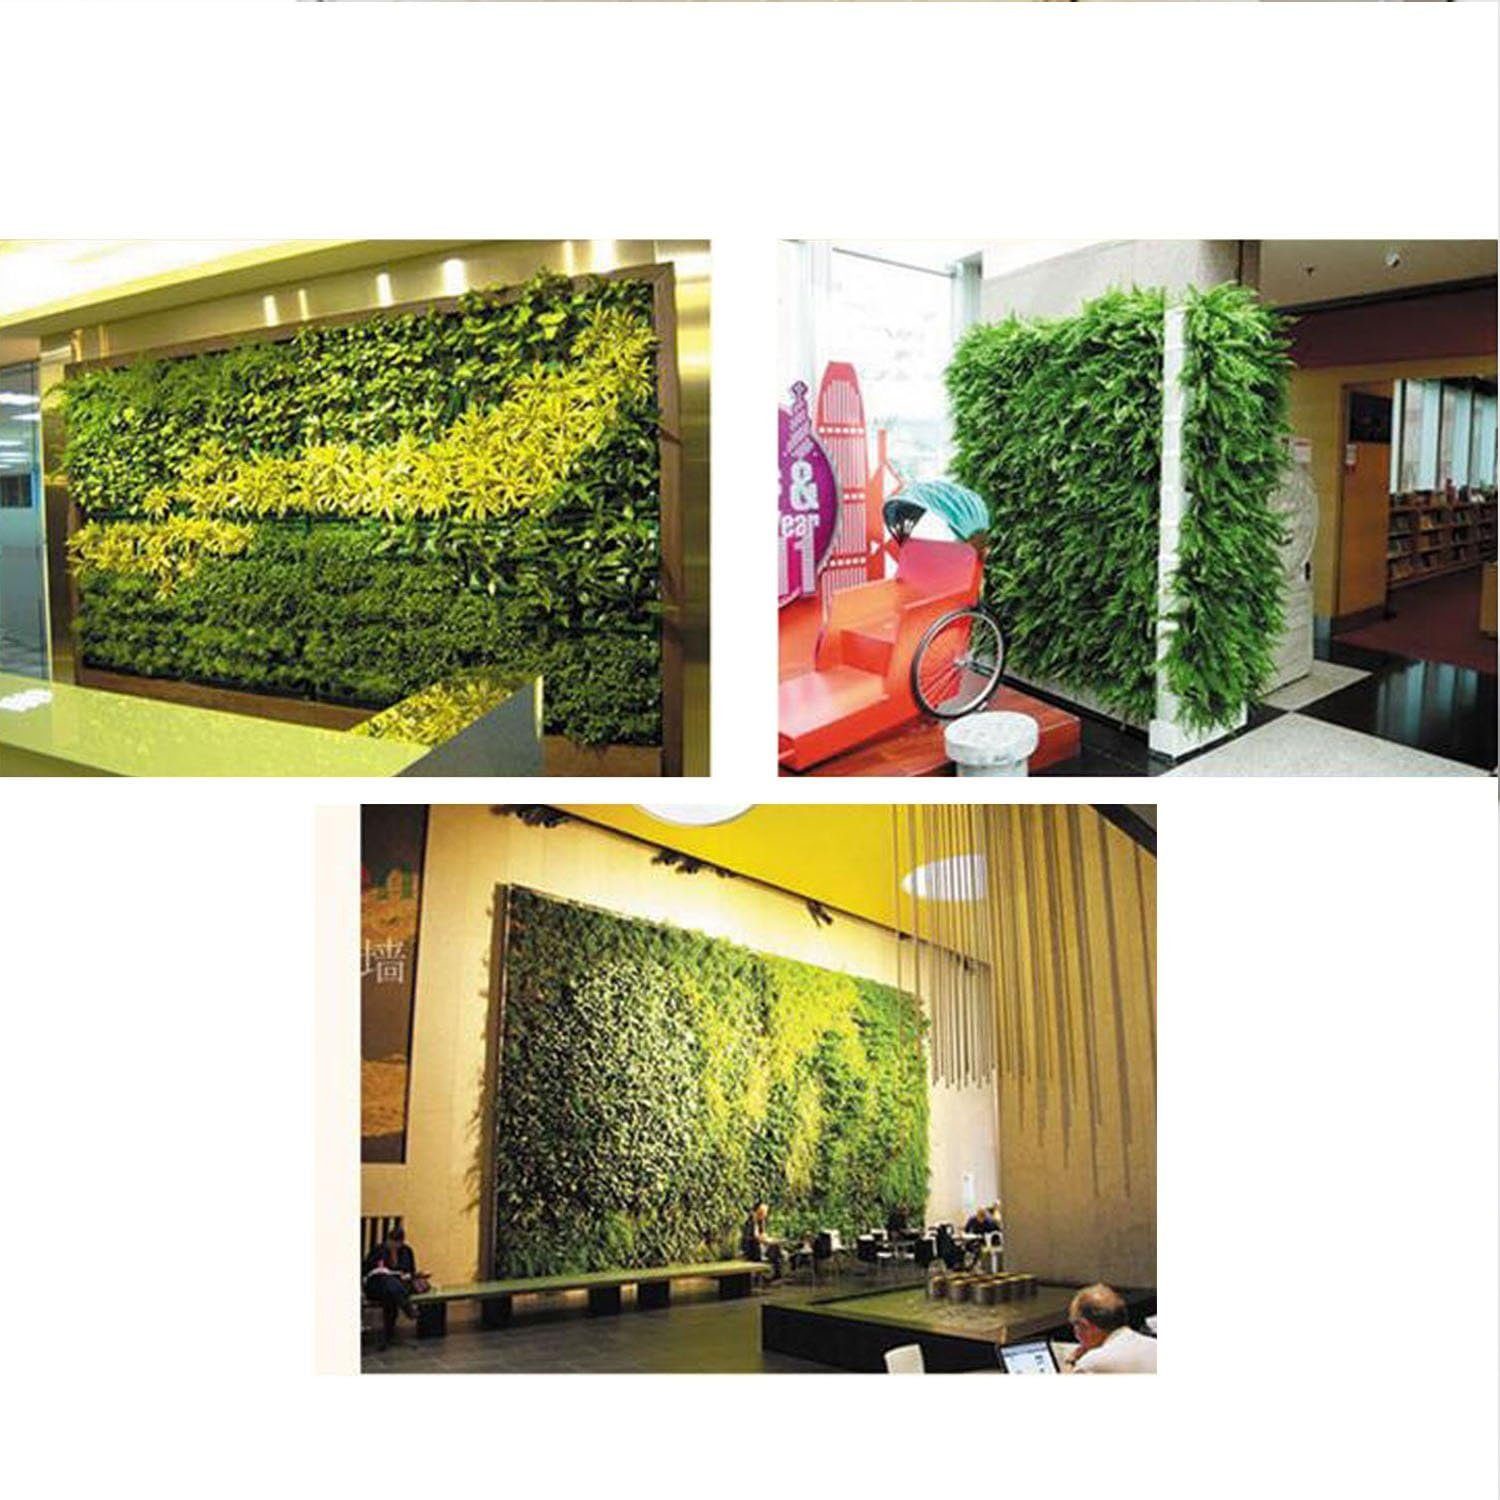 An Pflanzbeutel vertikaler Jormftte Blumentopf,Gartenbedarf hängender Grün1 der Pflanzkübel Wand